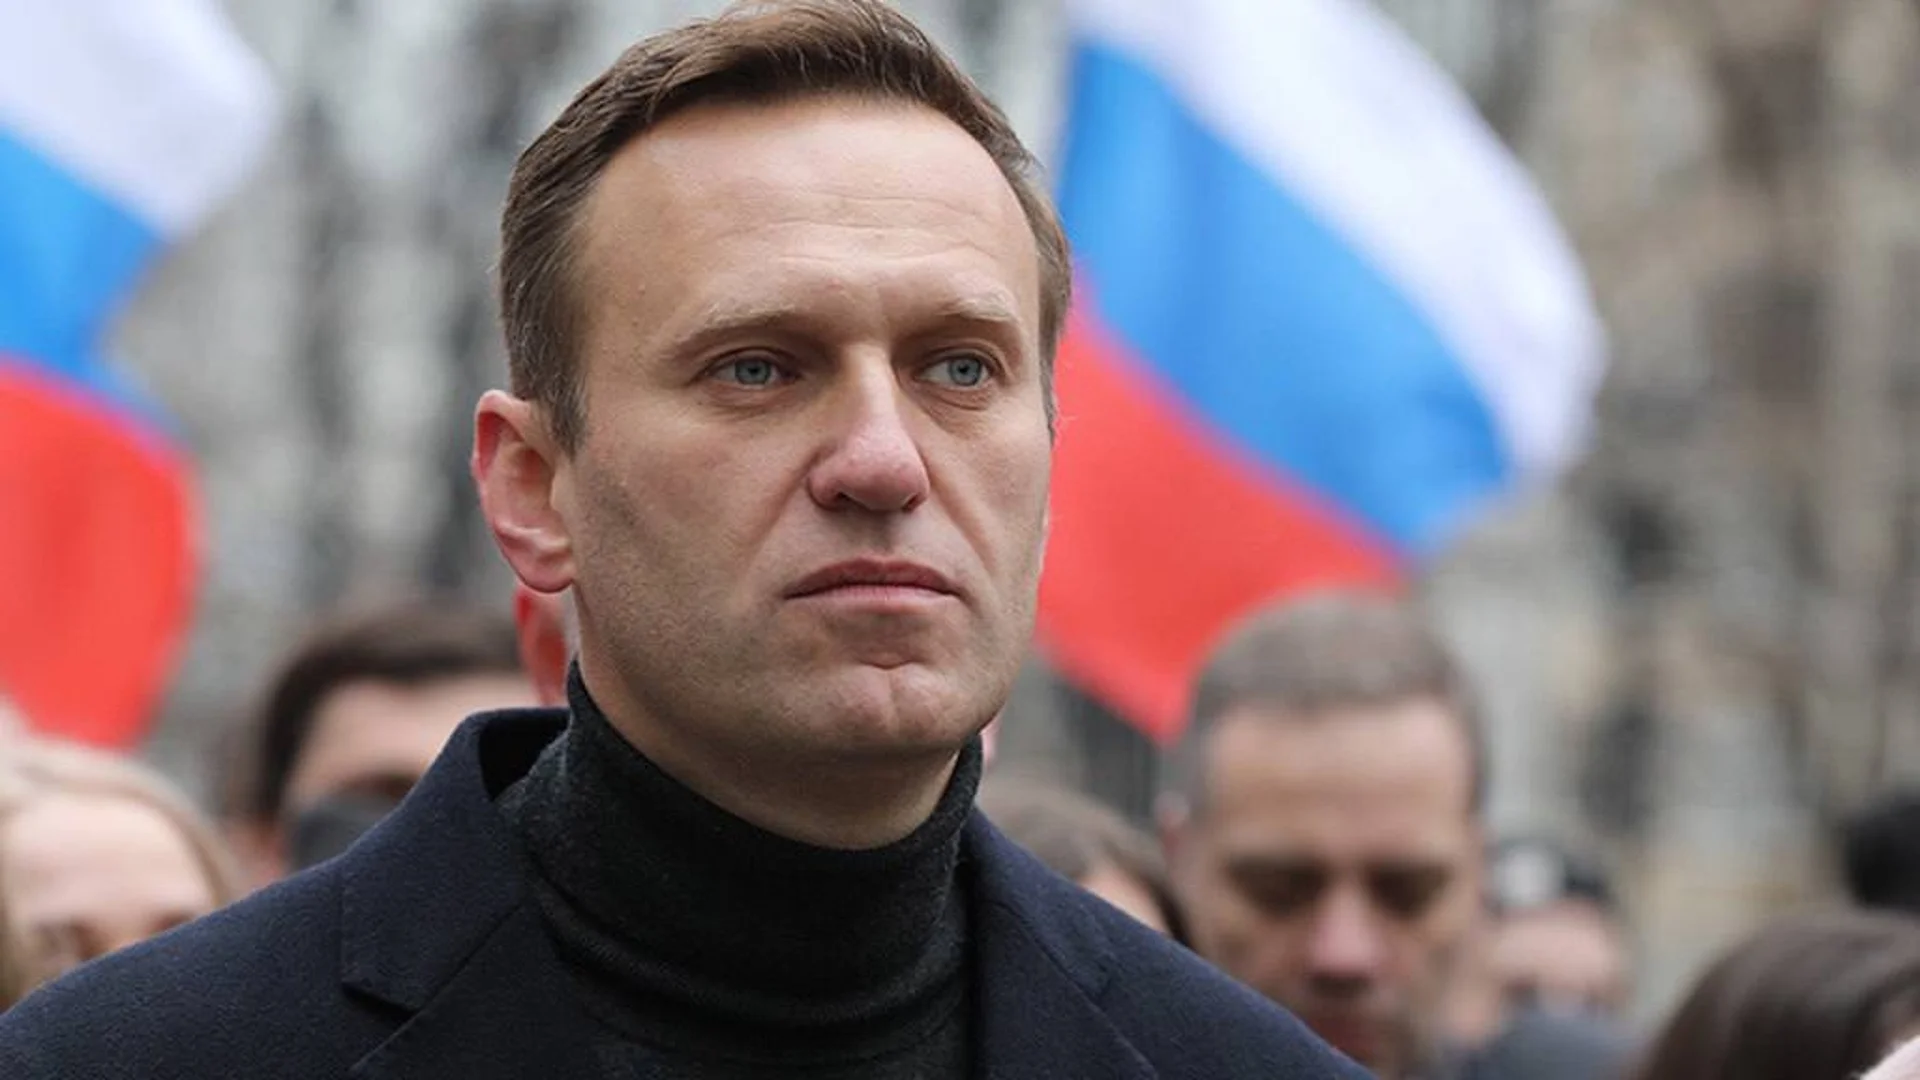 Руските власти с ултиматум: Или закрита церемония, или погребение на Навални на територията на затвора